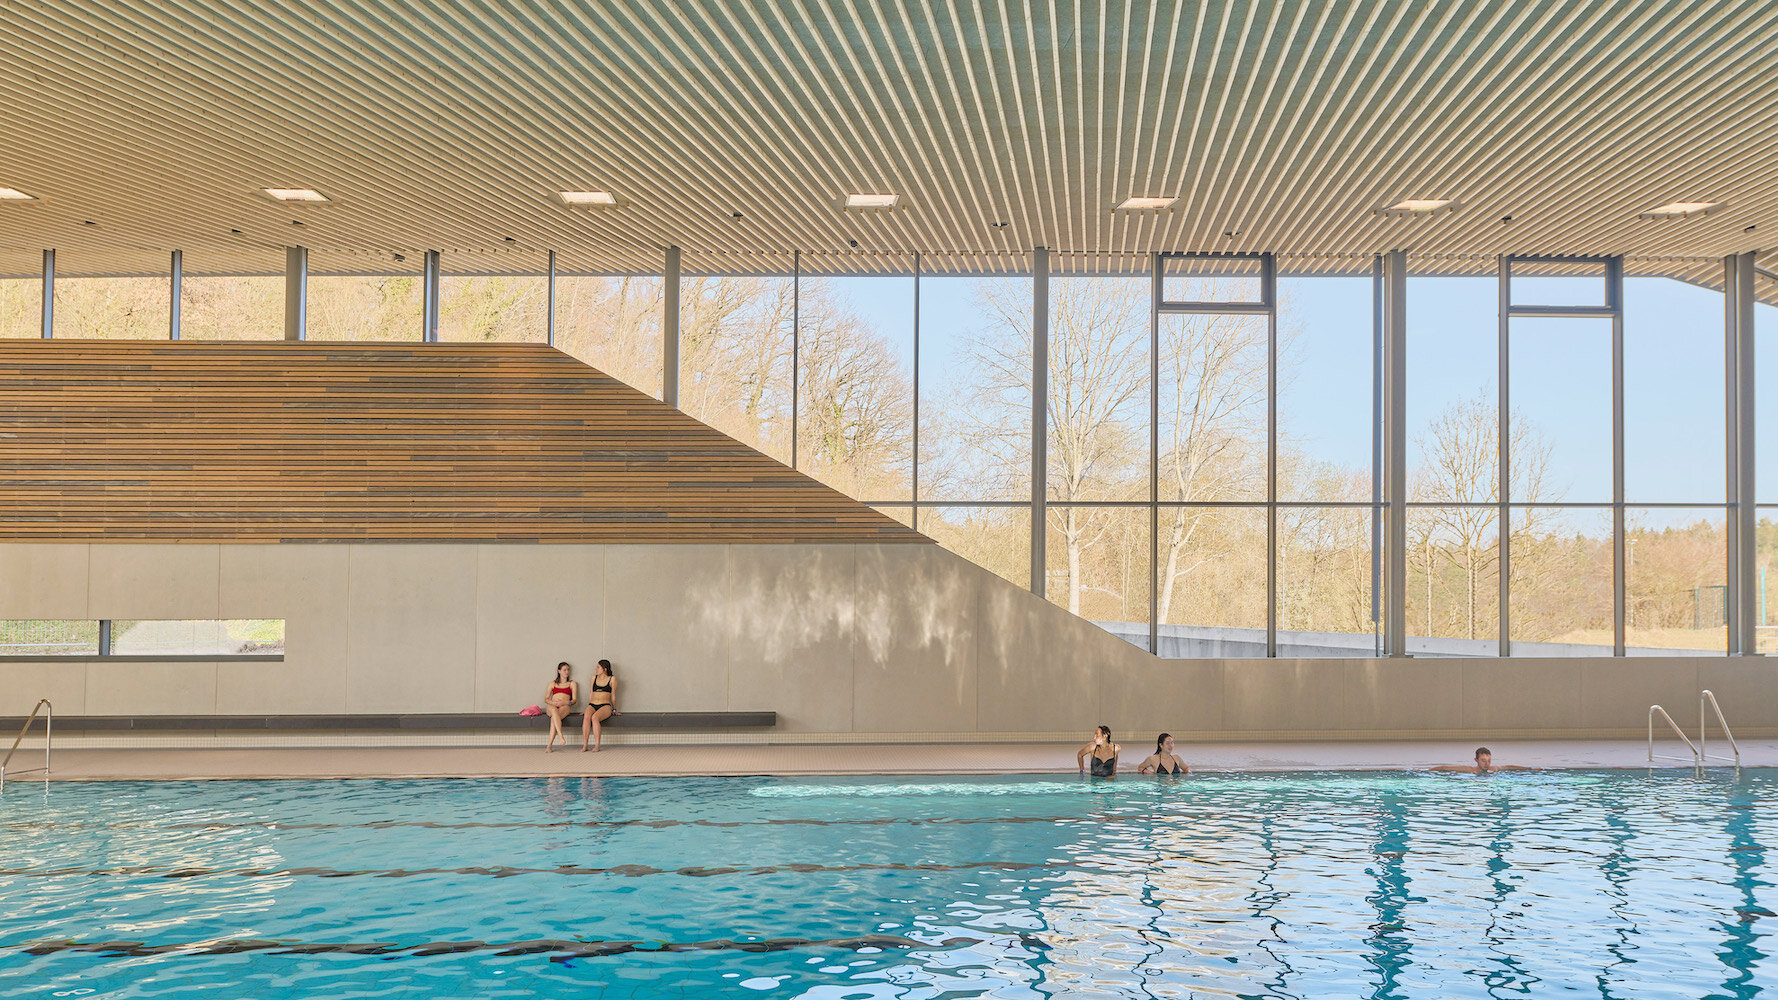 Behnisch Architekten's Schwaketenbad Aquatic Center Puts a Pool-Packed Program Under Three Distinct Roofs